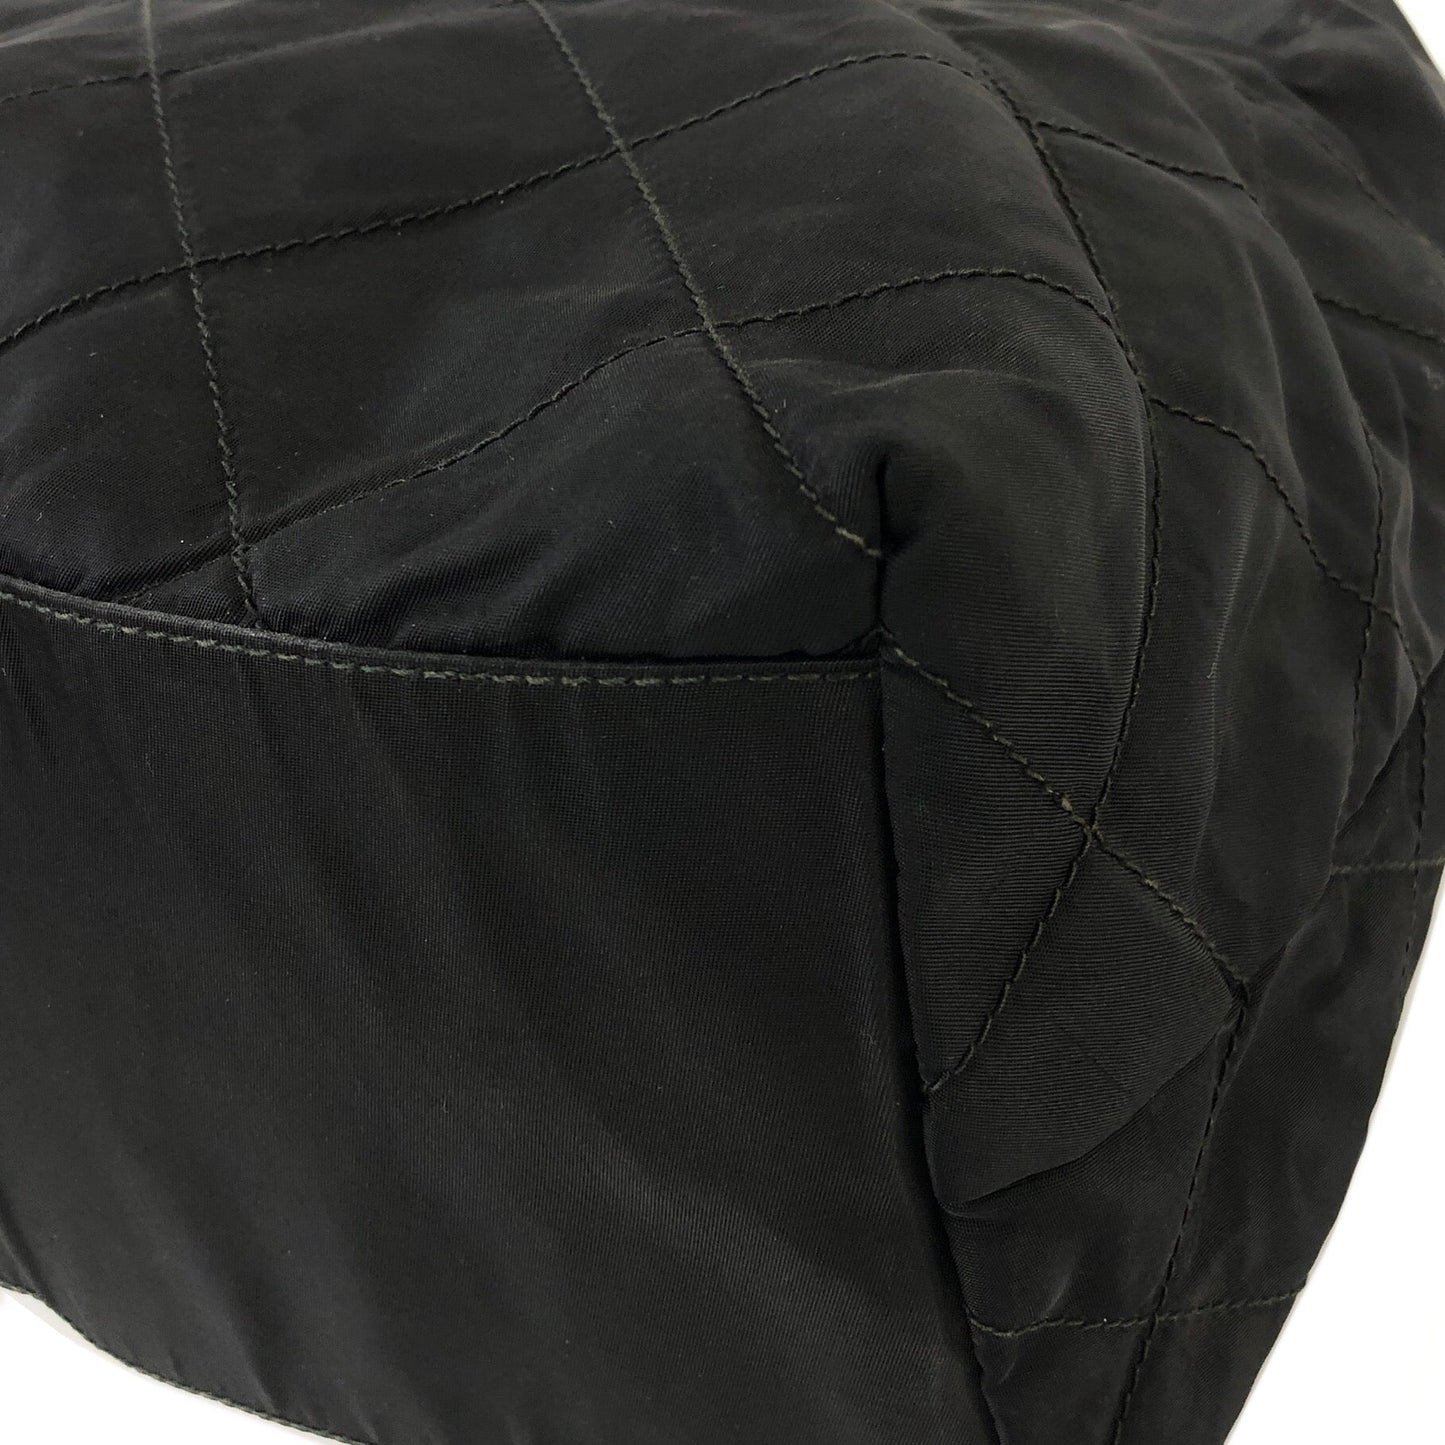 PRADA Chain Nylon Shoulder bag Black ibc4c8